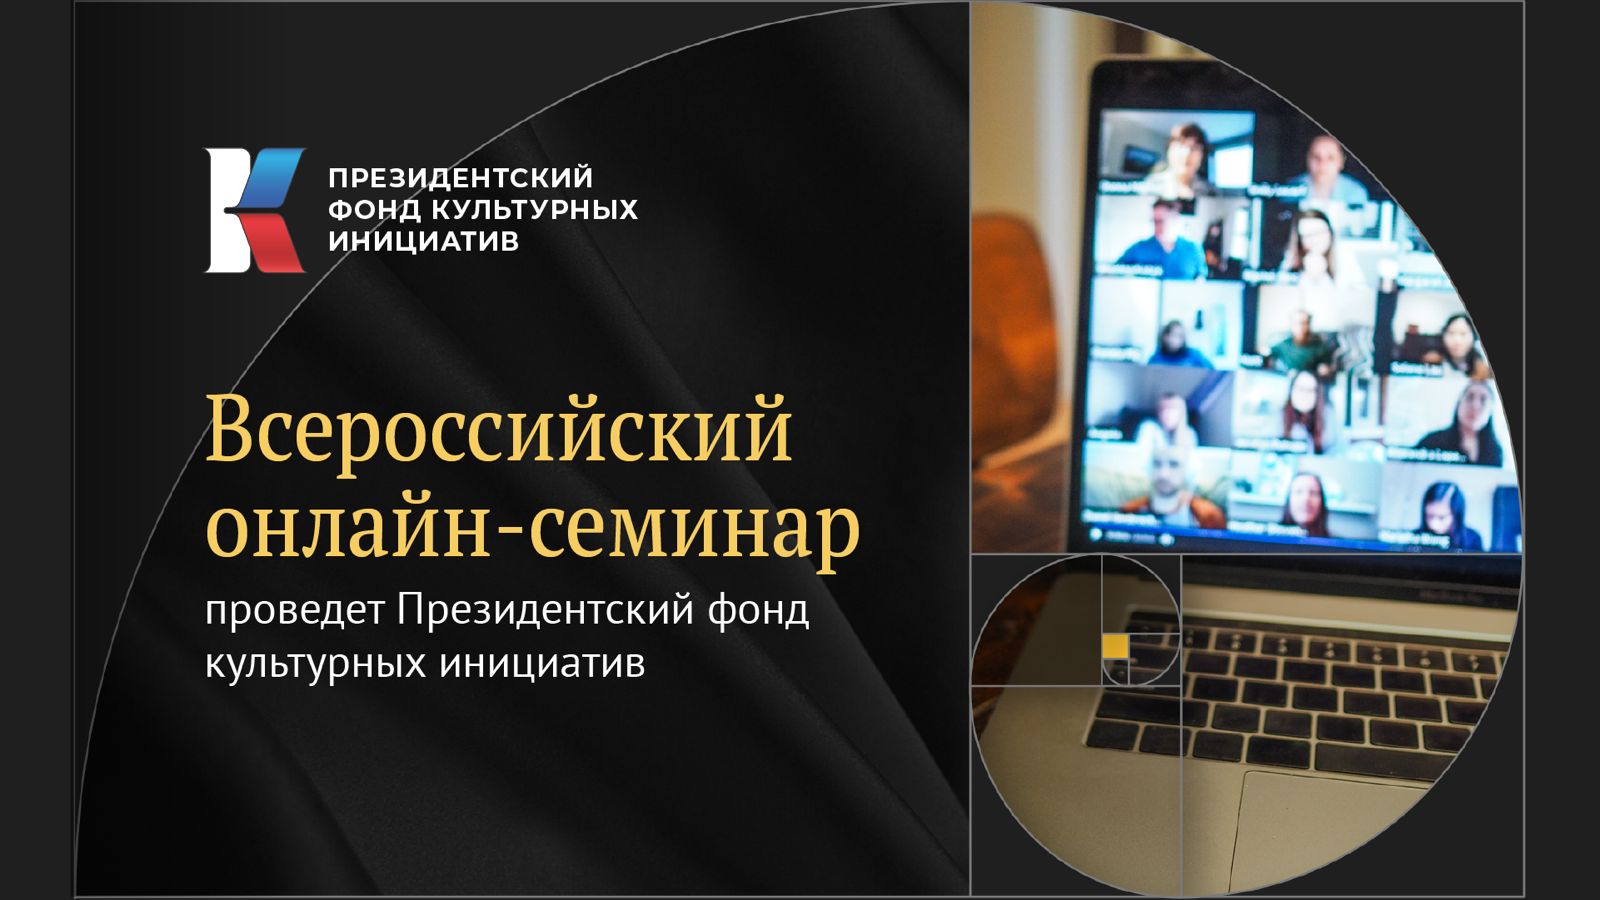 Президентский фонд культурных инициатив проведёт всероссийский онлайн-семинар